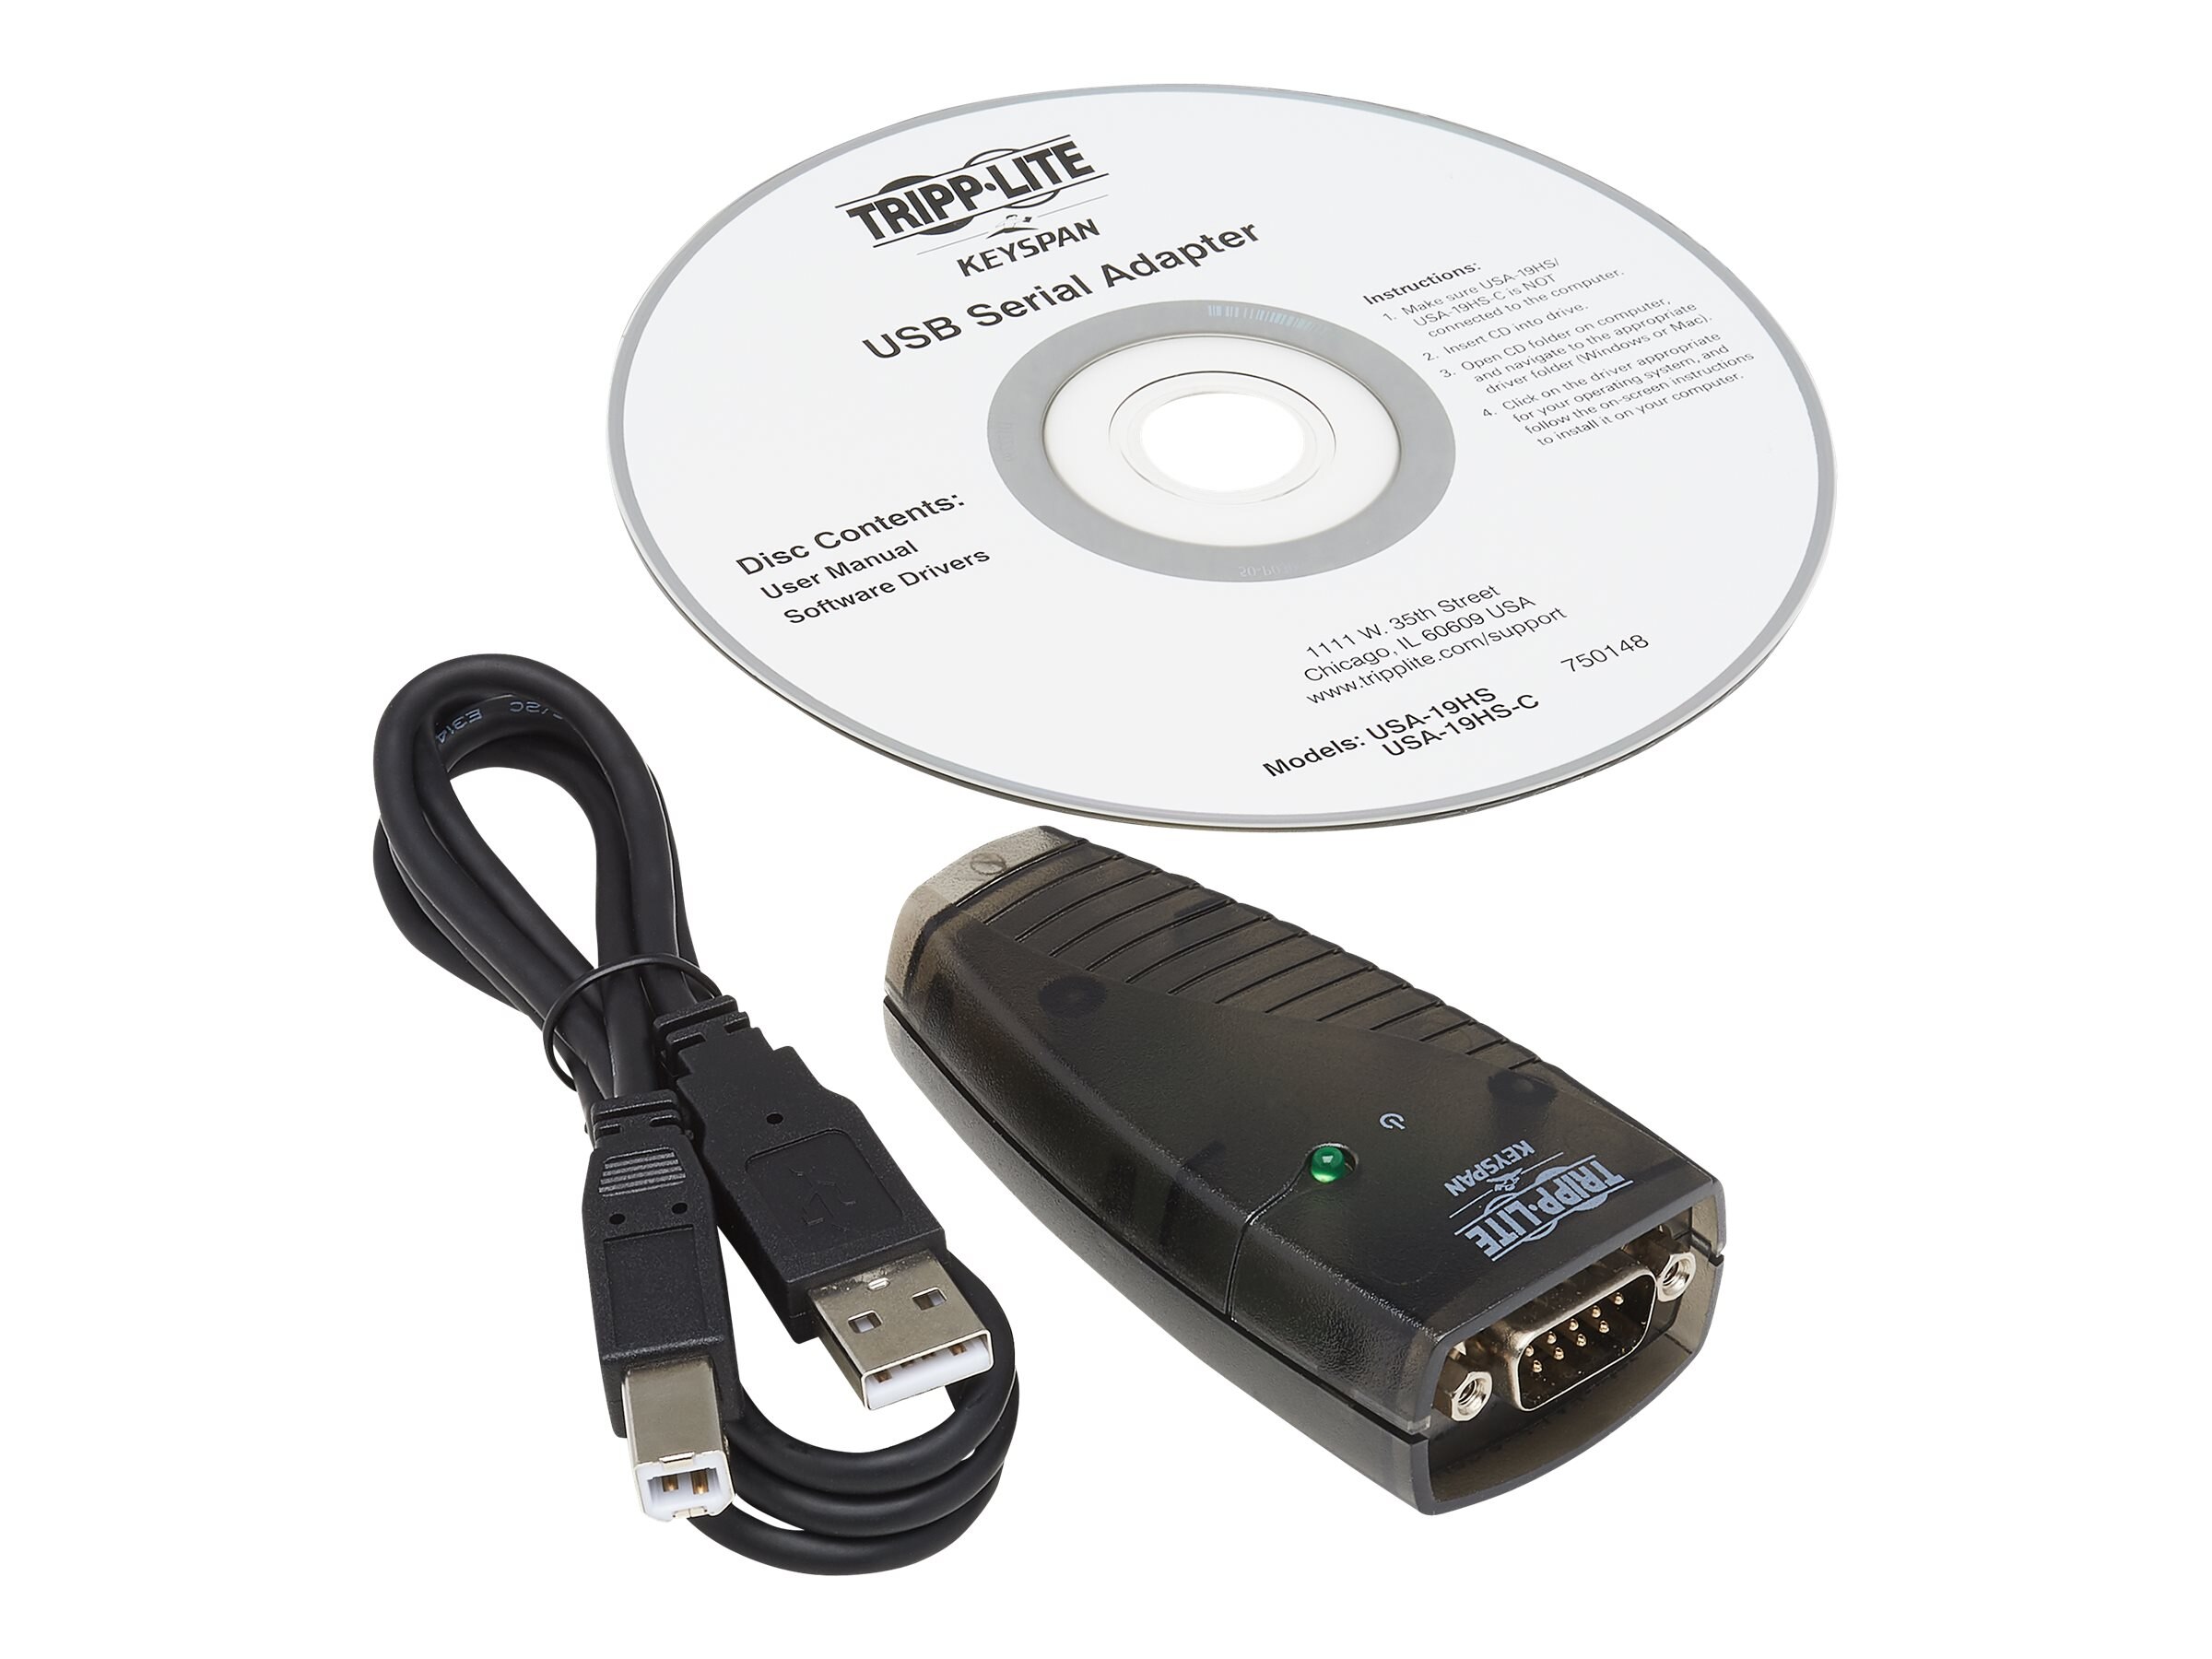 Tripp High USB Serial Adapter (USA-19HS)